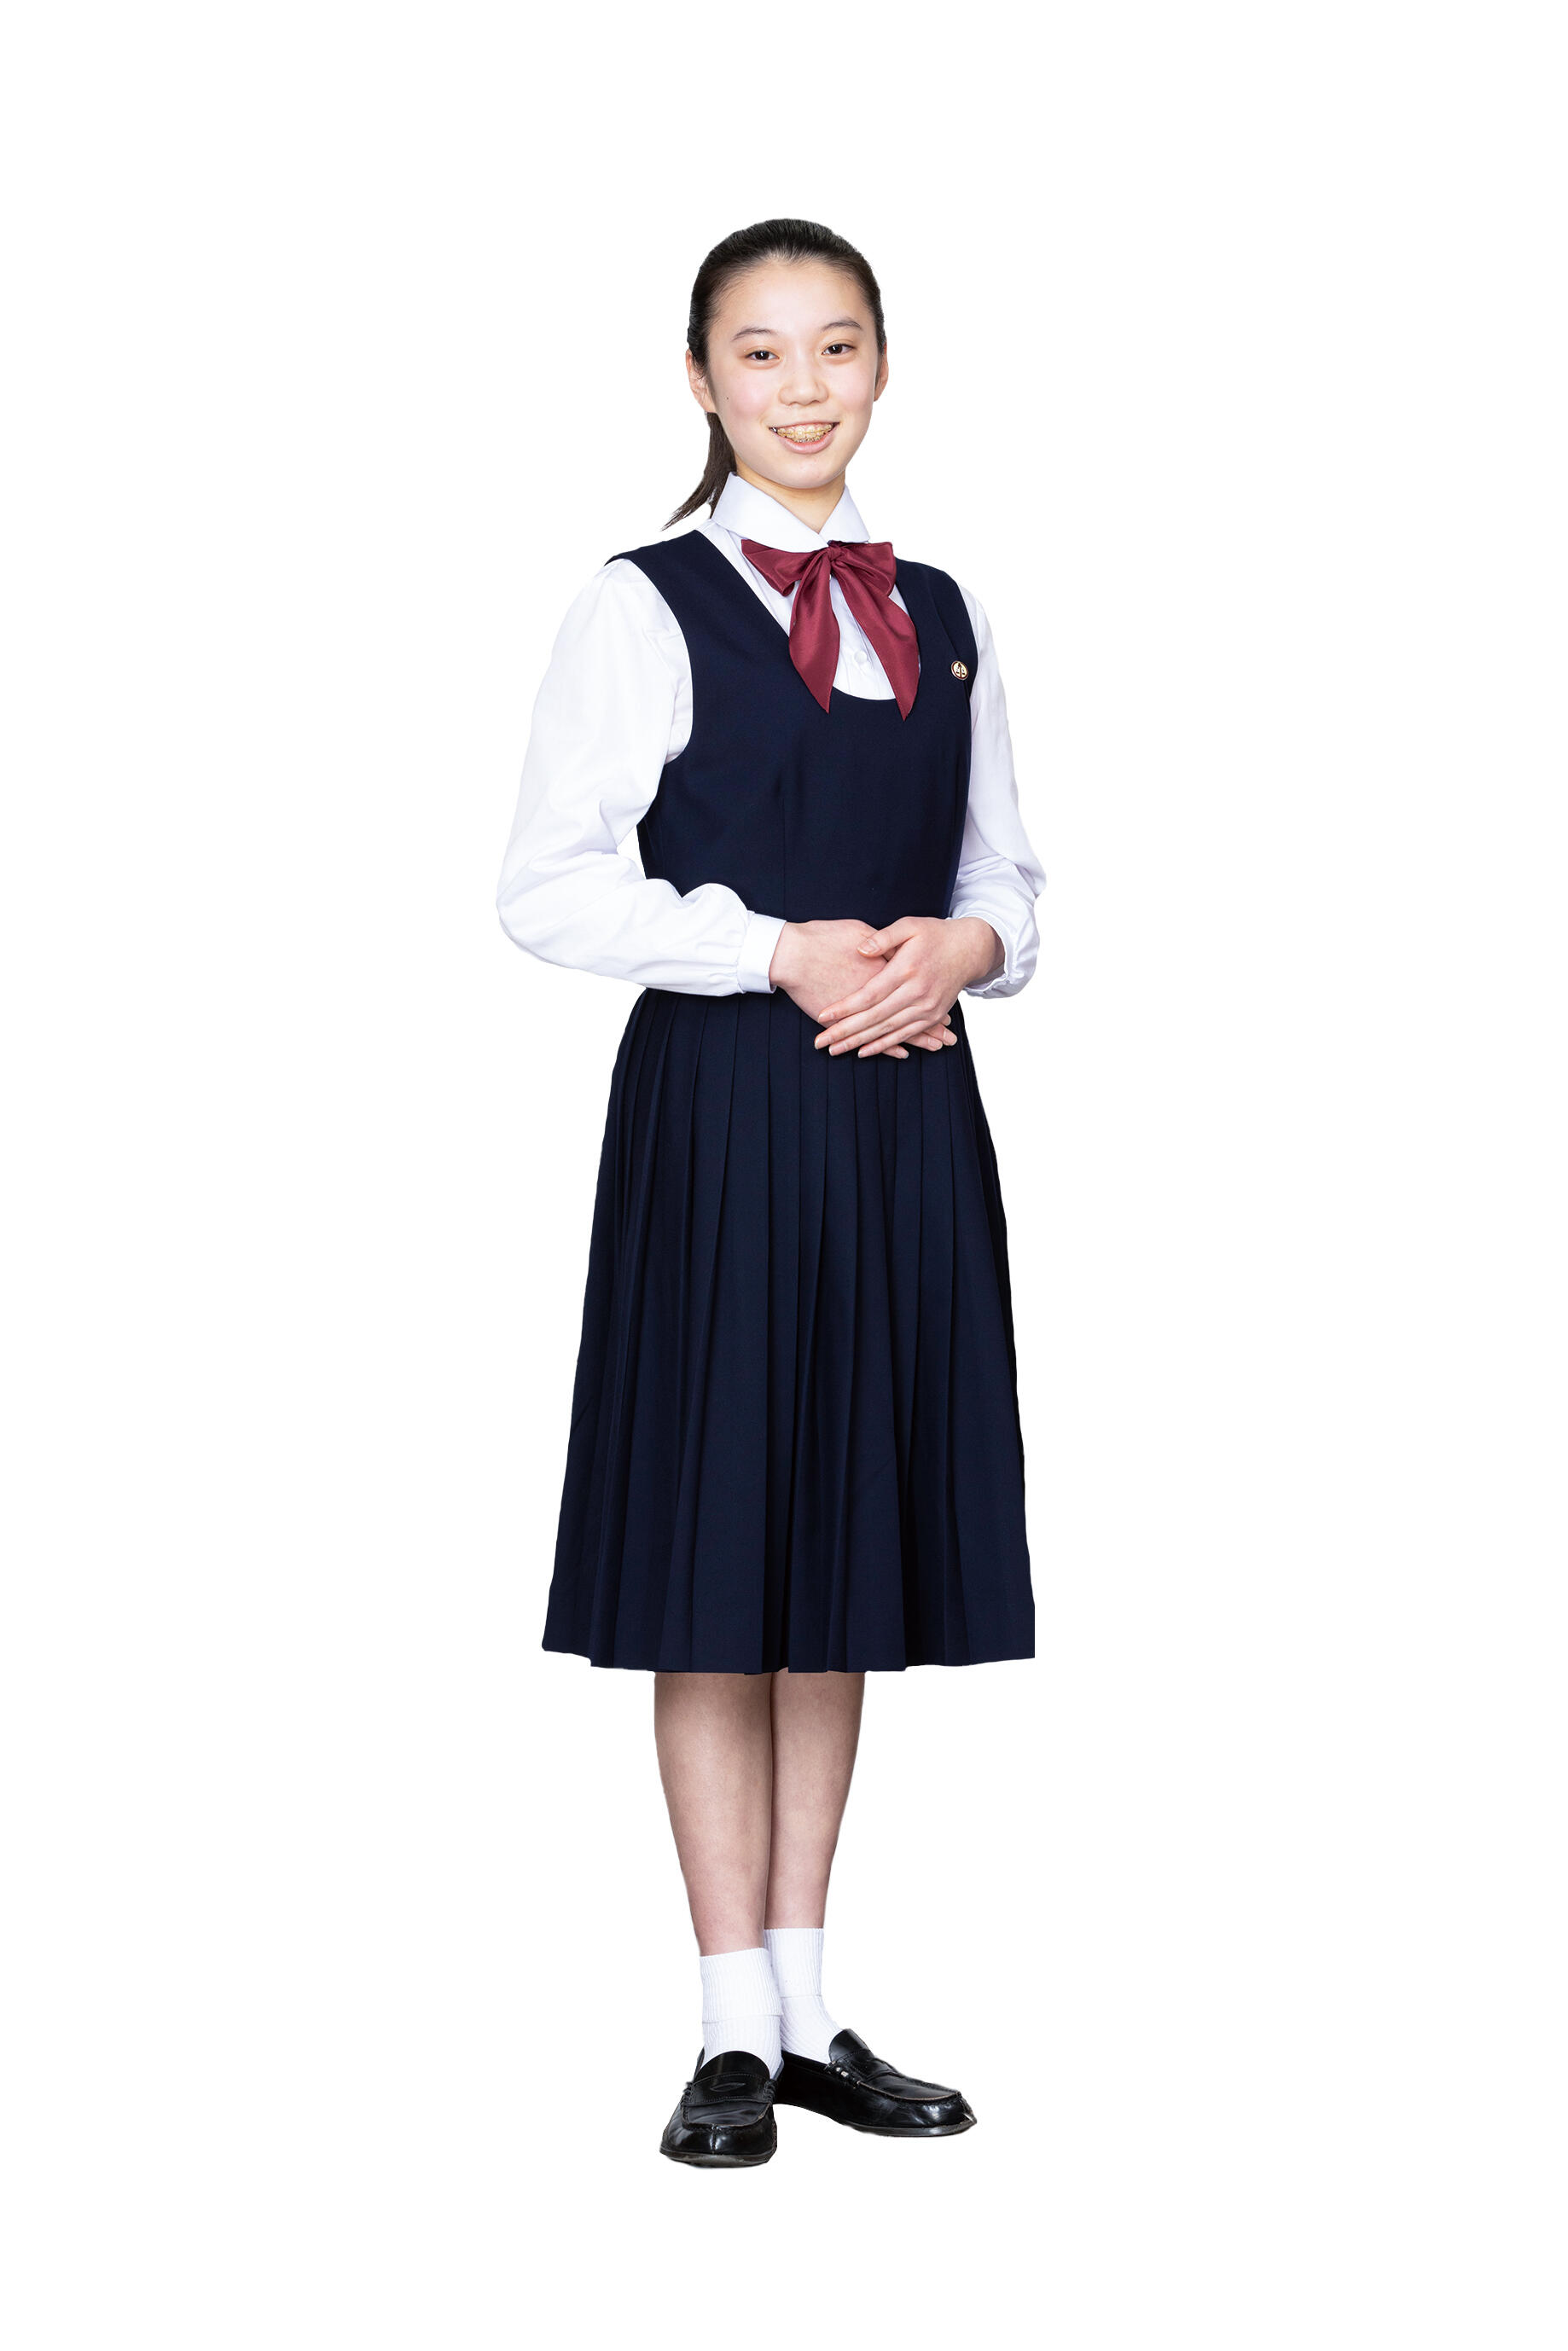 中学生 女子 制服 